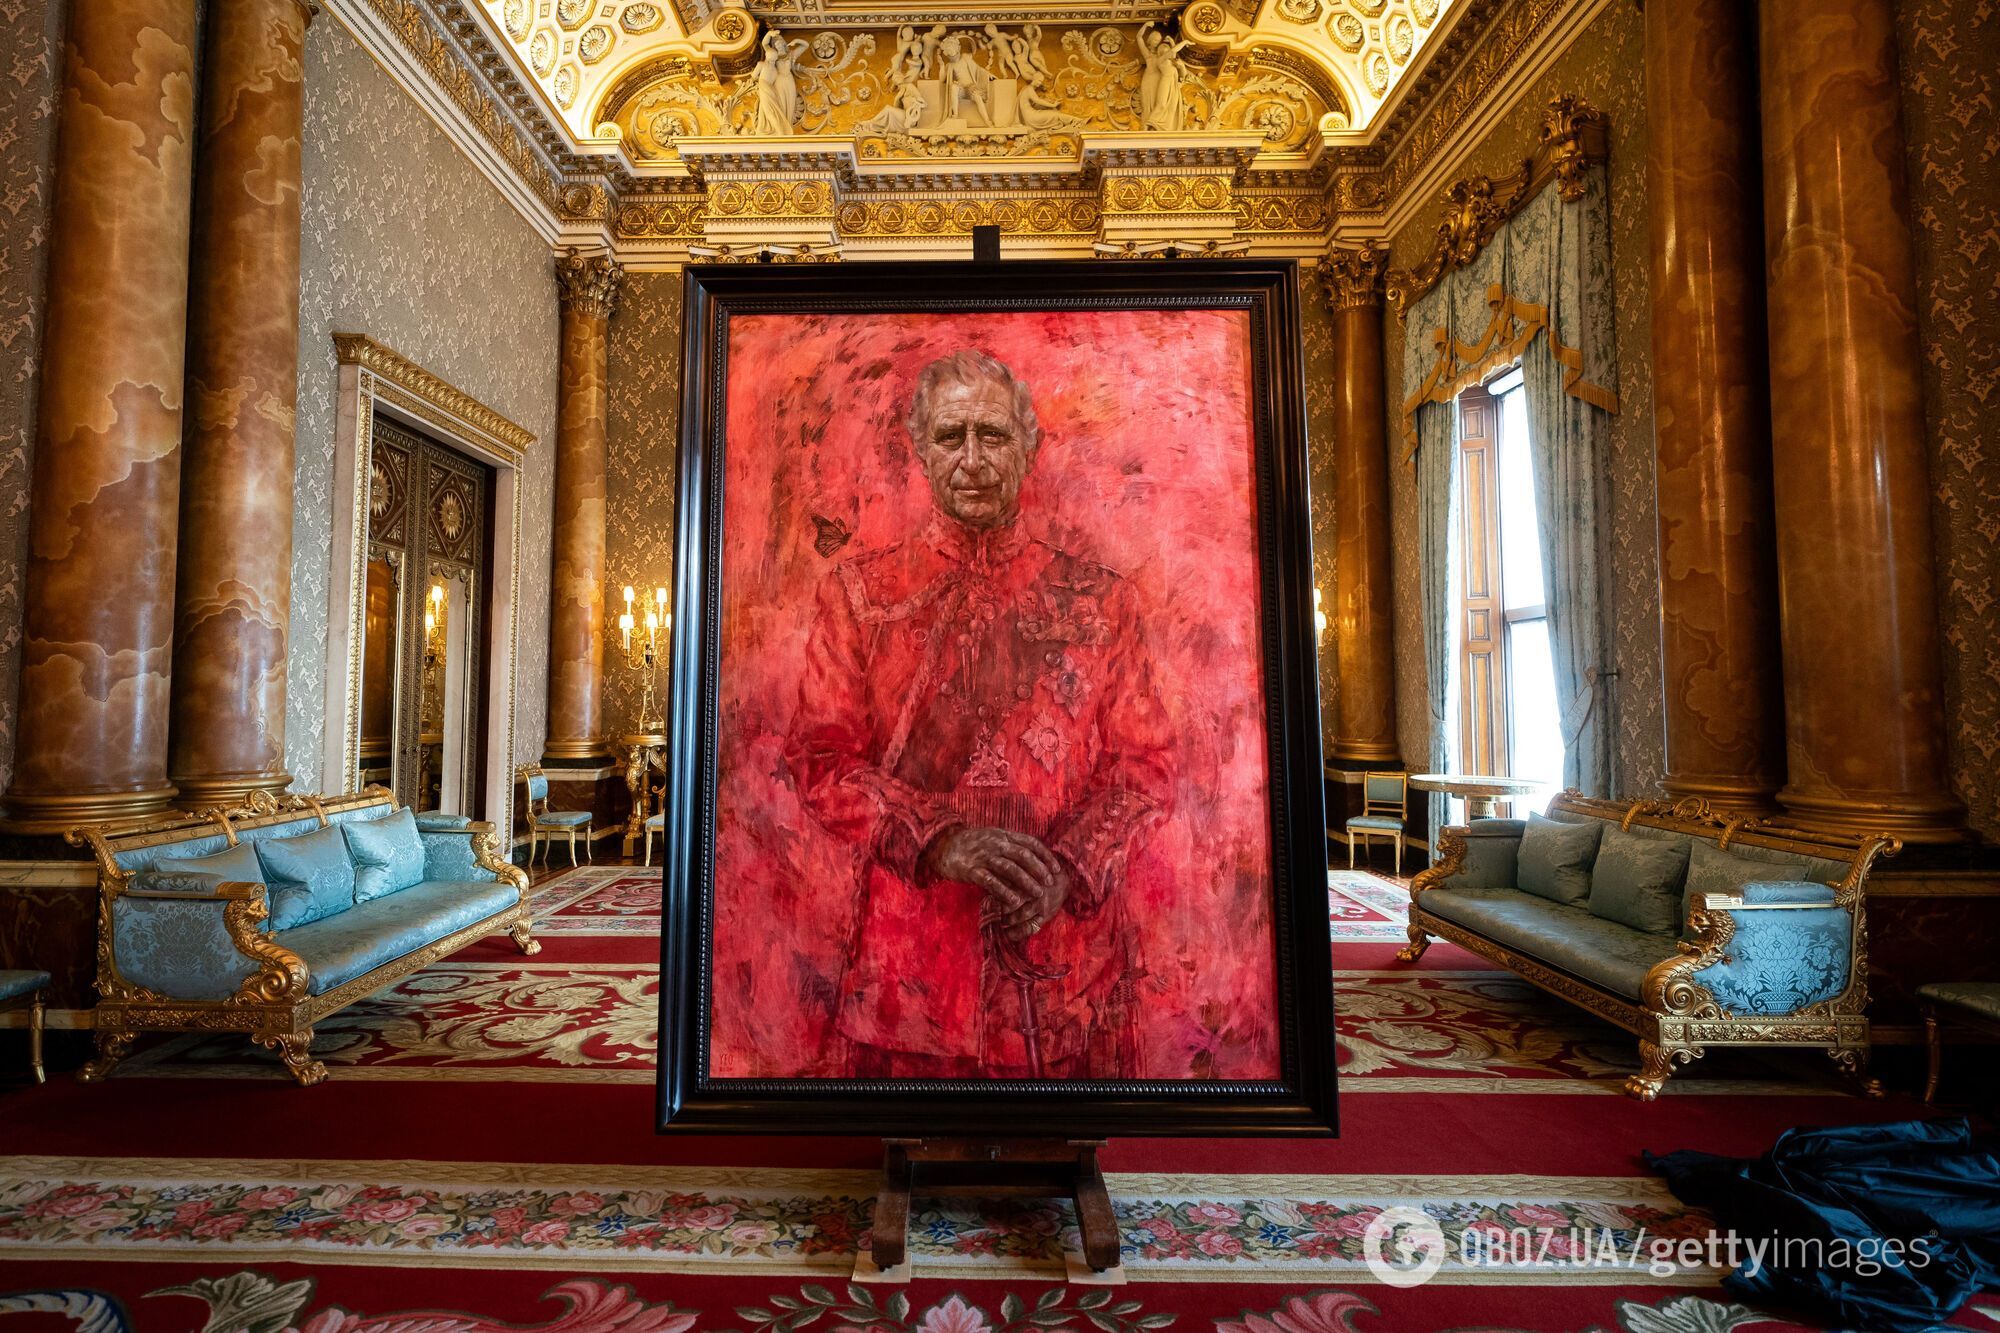 "Наче розлили варення": офіційний портрет короля Чарльза викликав дискусію у мережі. Фото